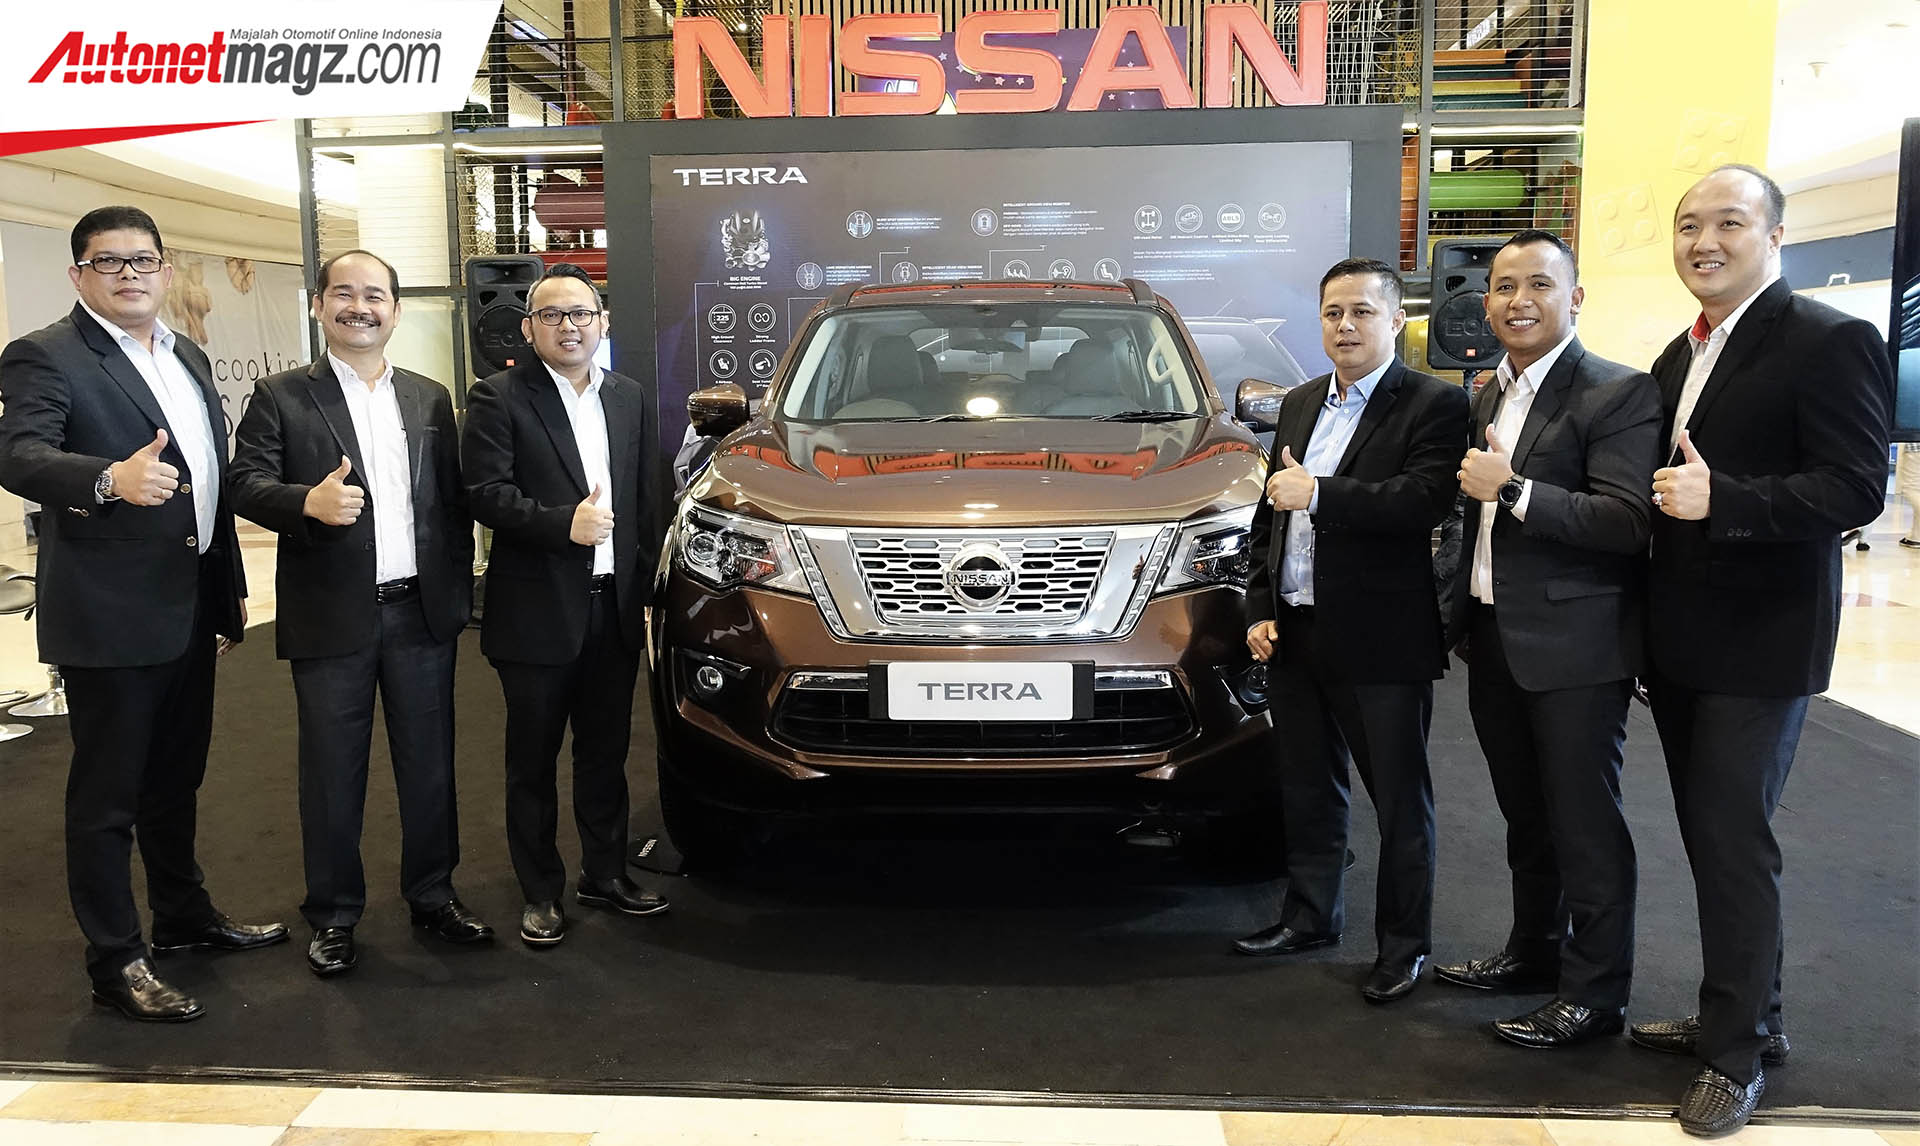 Berita, Launching Nissan Terra Medan: Akhirnya, Nissan Terra Resmi Diluncurkan Di Medan